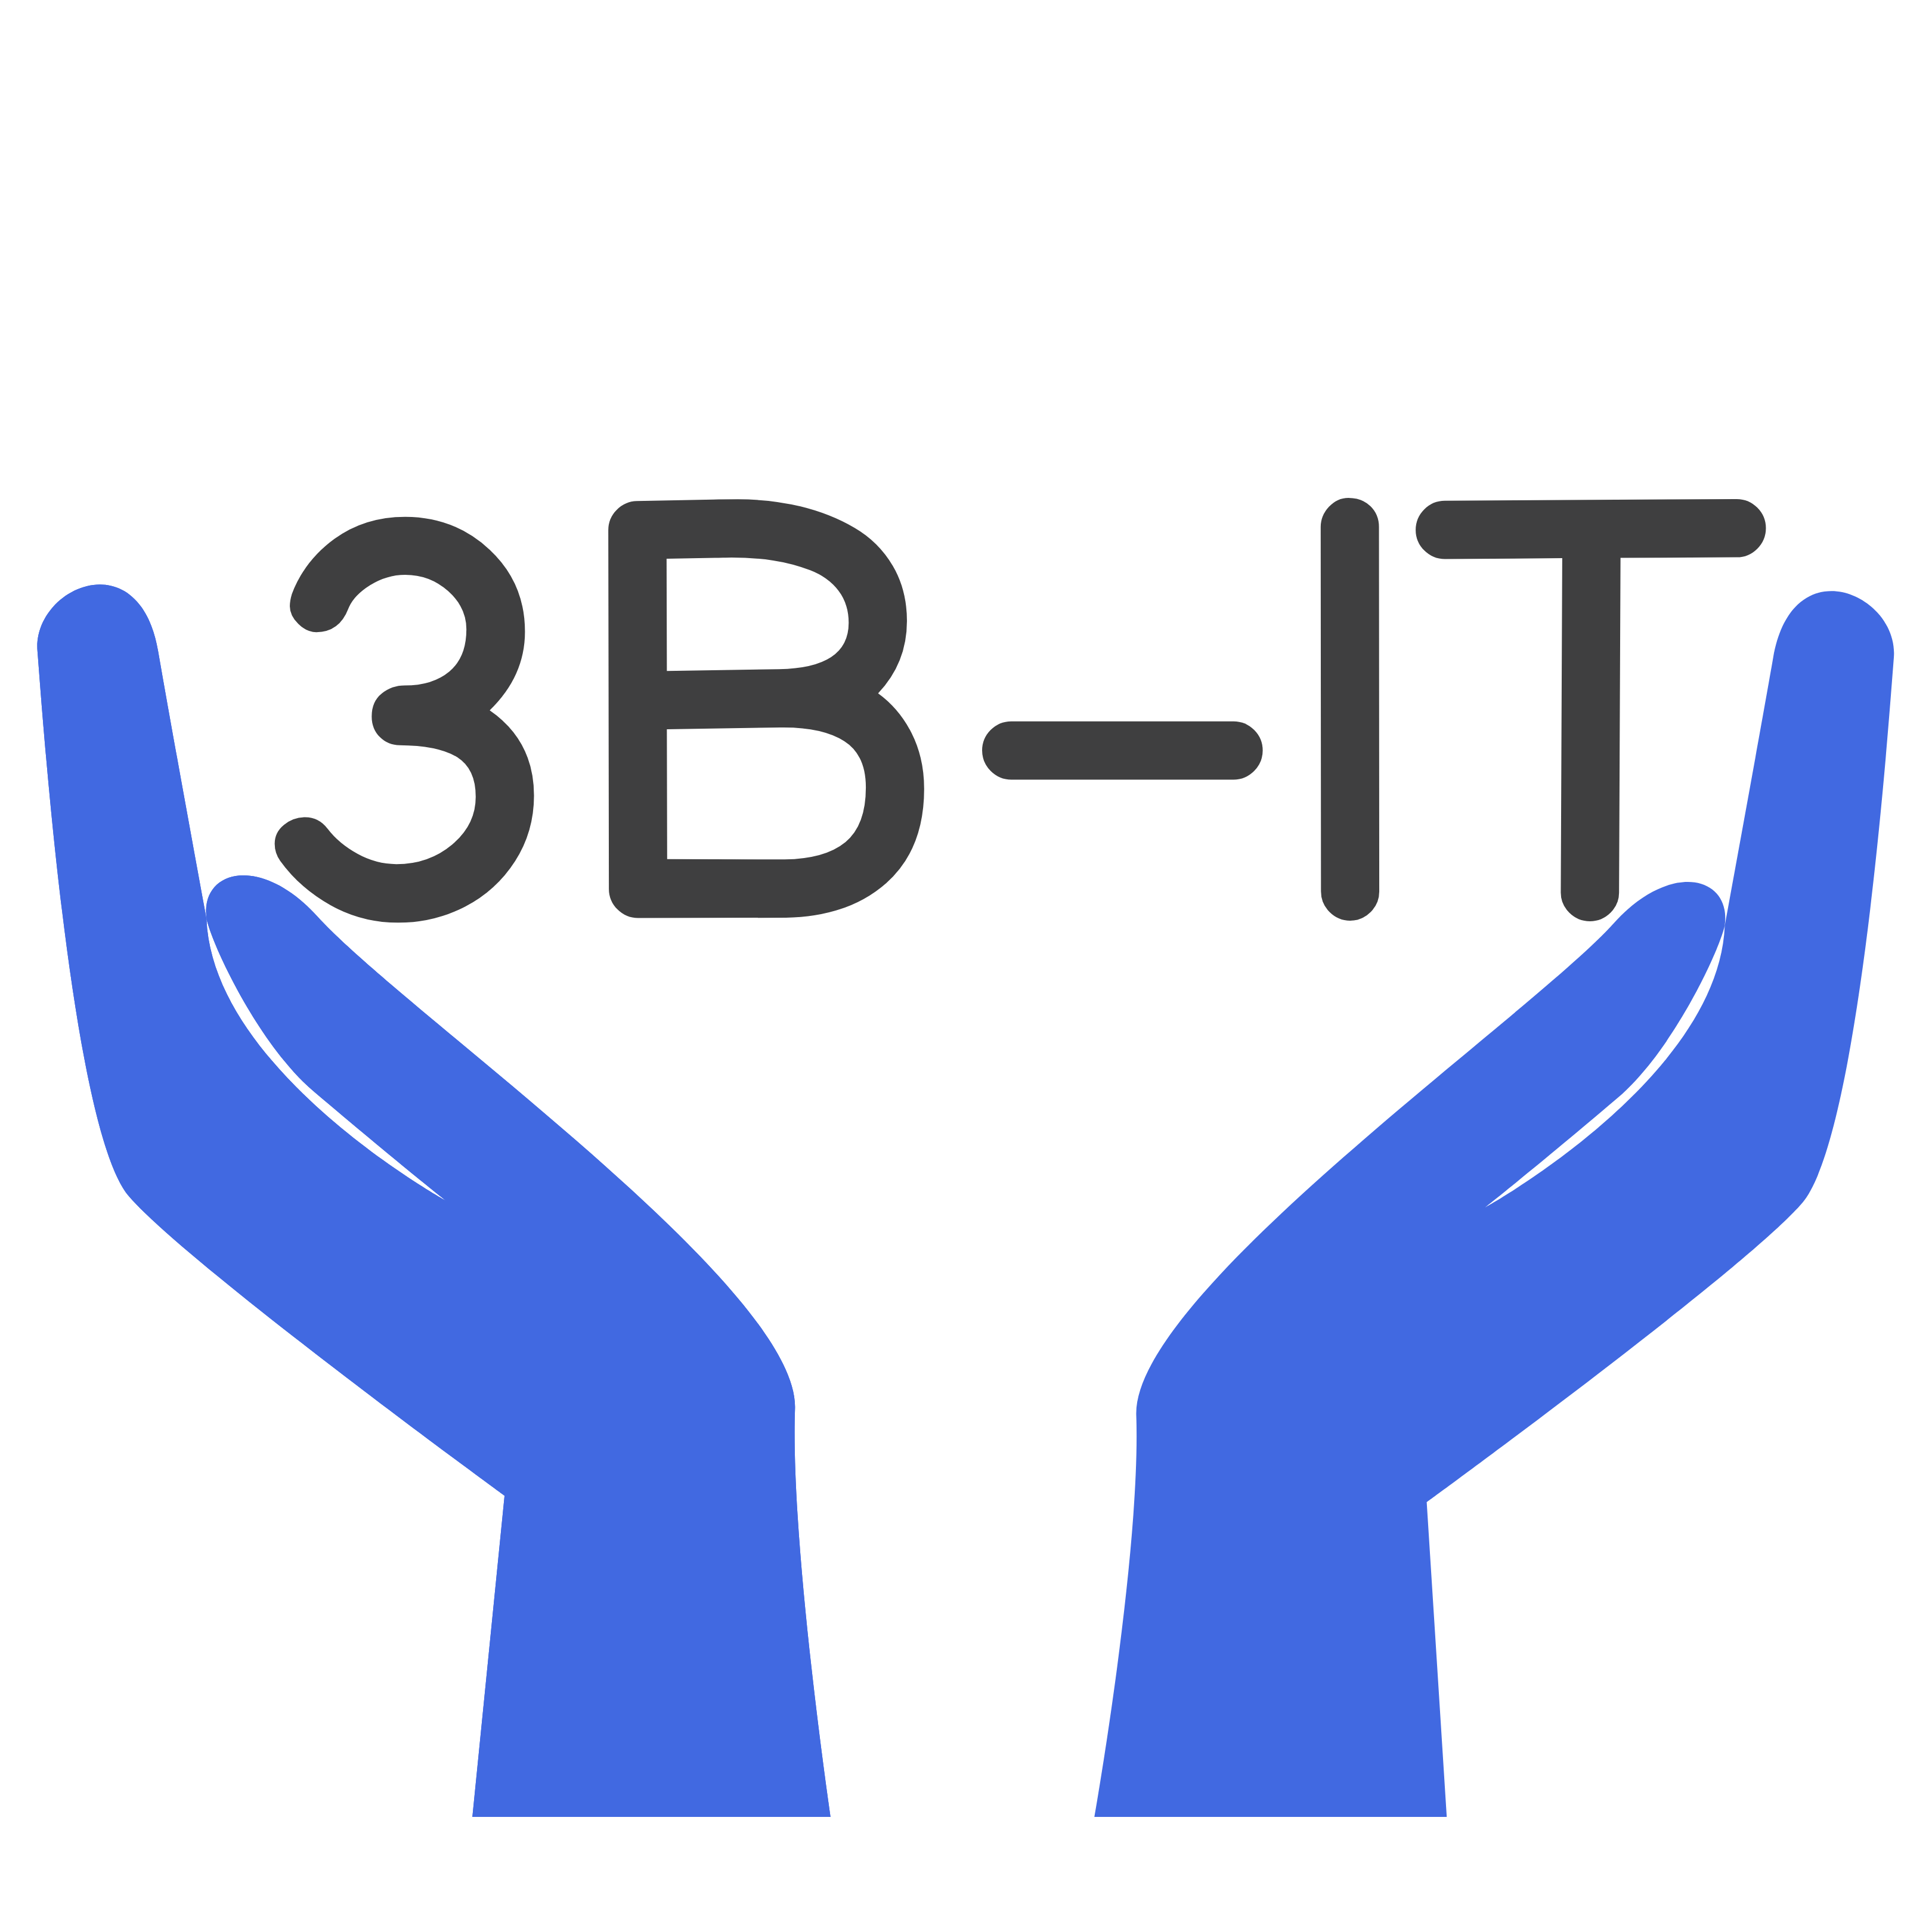 3B-IT aus Berlin ist ein IT-Systemhaus.